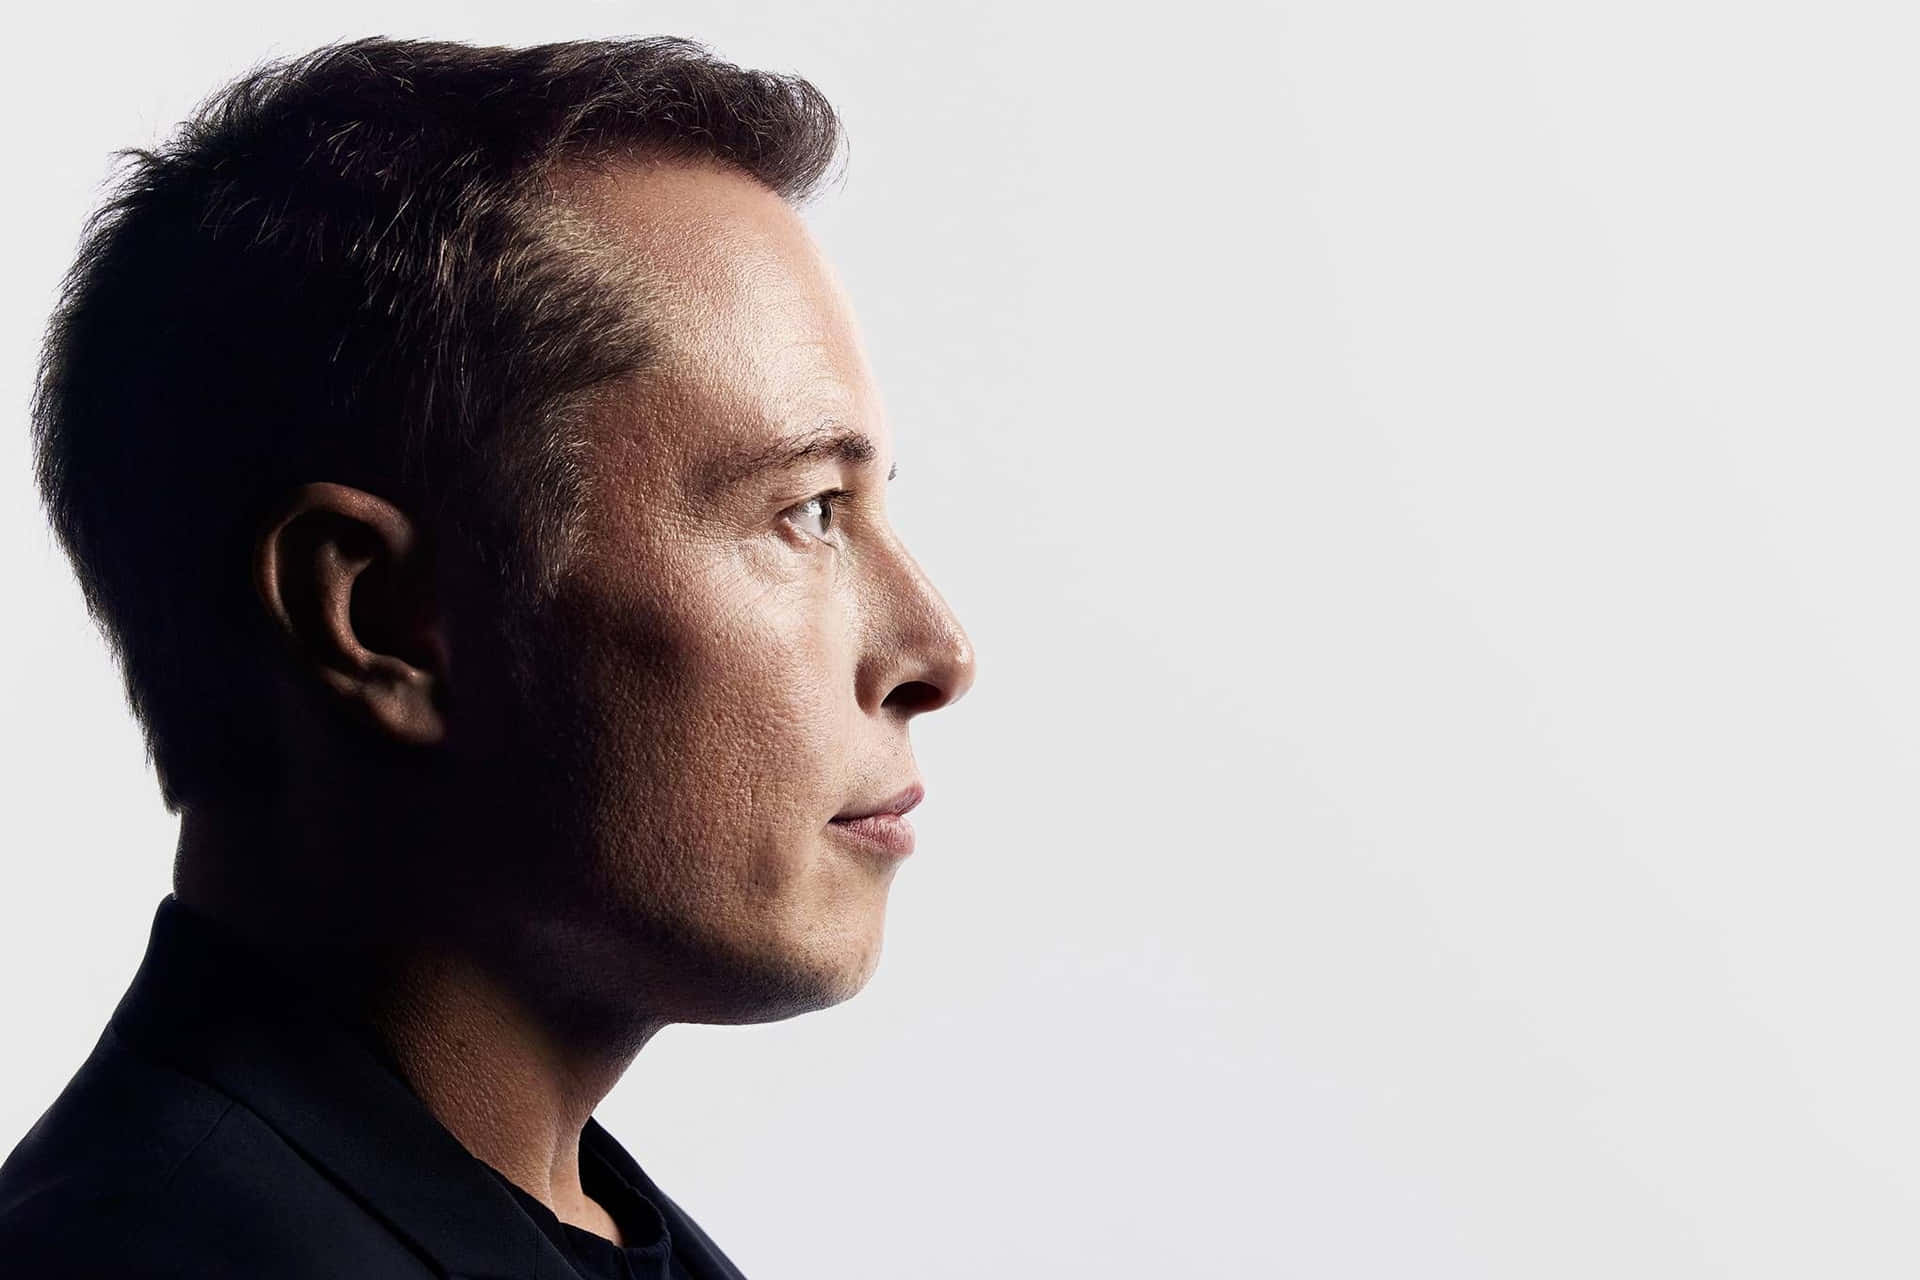 Elon Musk, The Entrepreneurial Leader